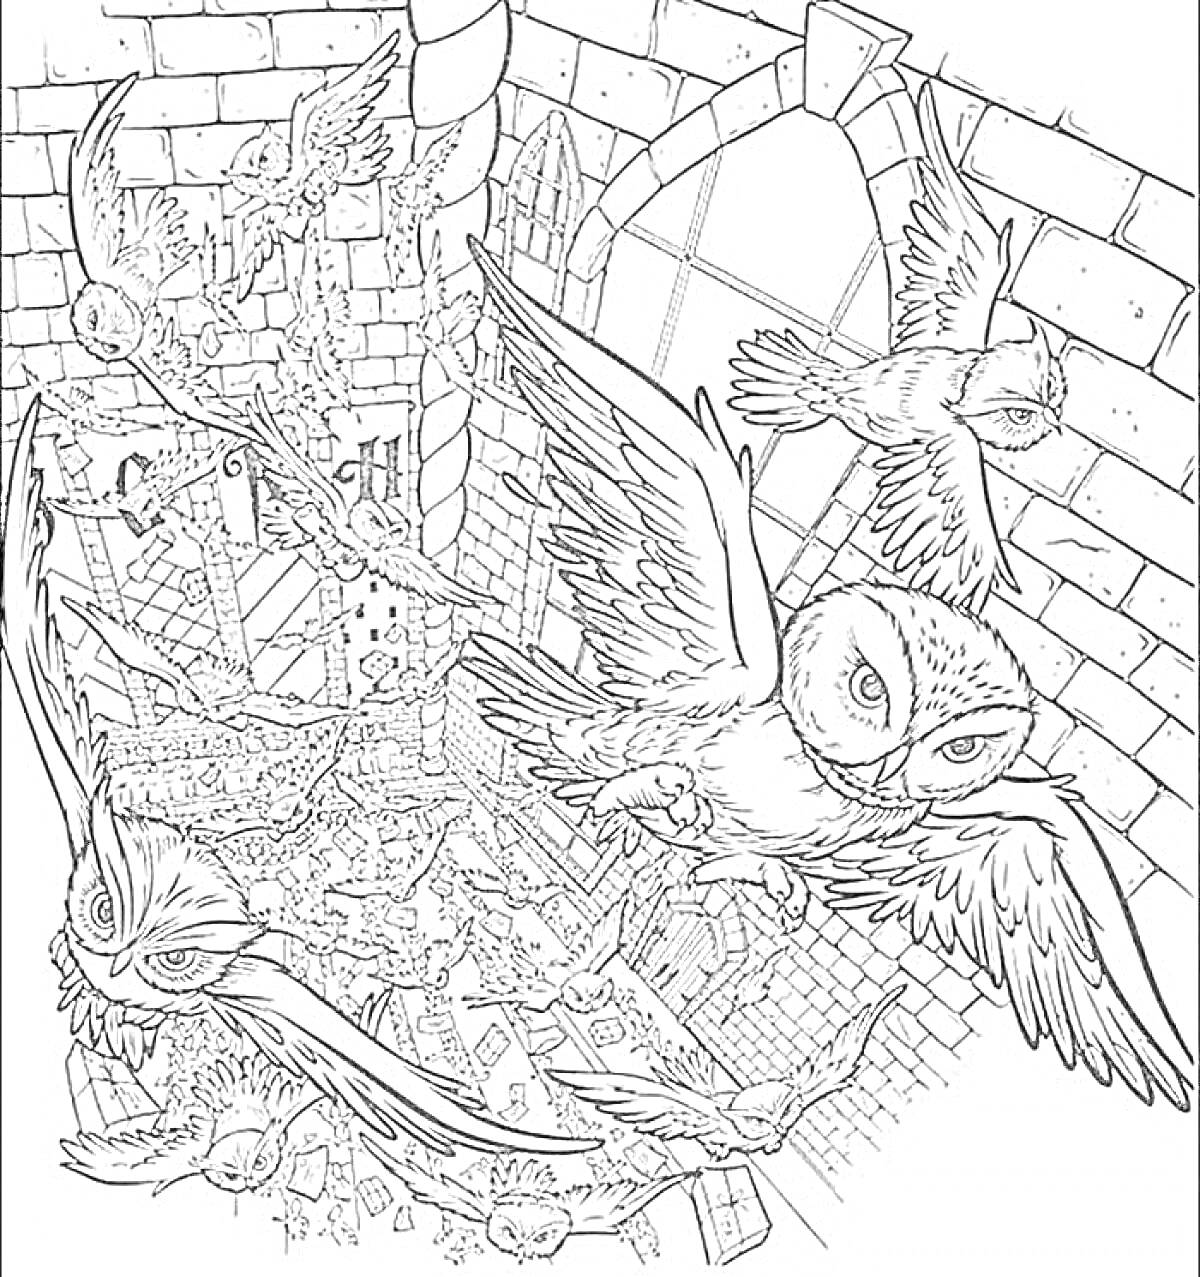 Раскраска Совиное сообщение по Гогвортсу (с совами, окнами замка и письмами)